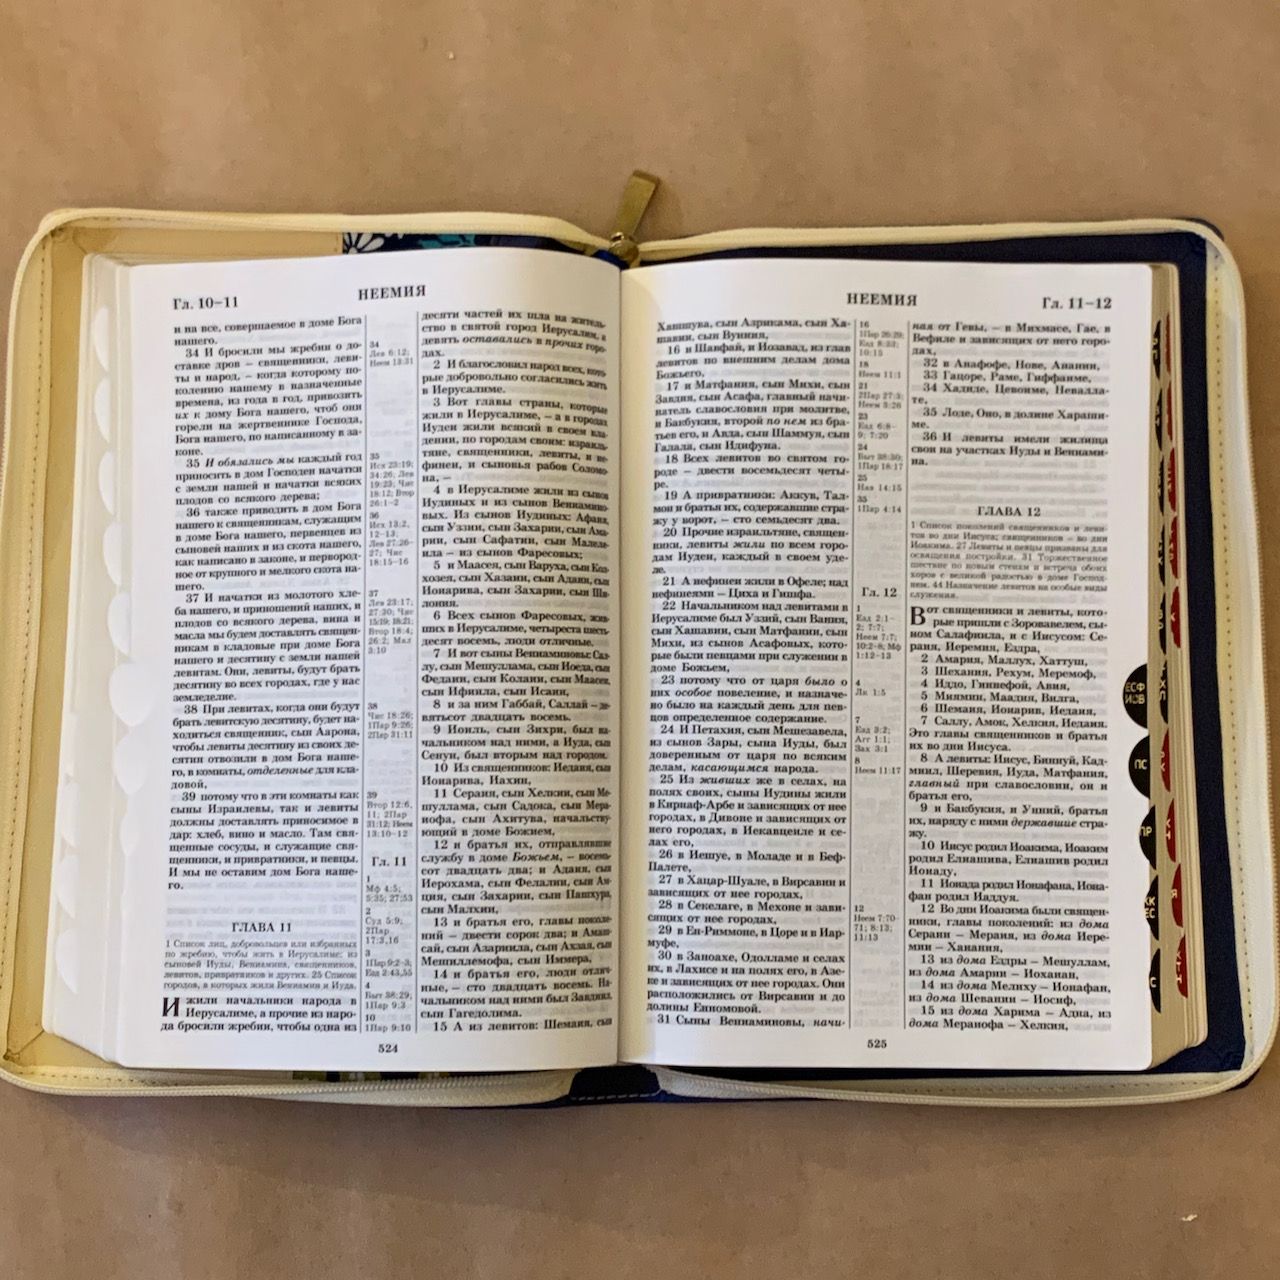 Библия 077DTzti формат, переплет из искусственной кожи на молнии с индексами, надпись золотом "Библия", цвет синий/ бежевый с тканевой вставкой из цветов, большой формат, 180*260 мм, цветные карты, крупный шрифт